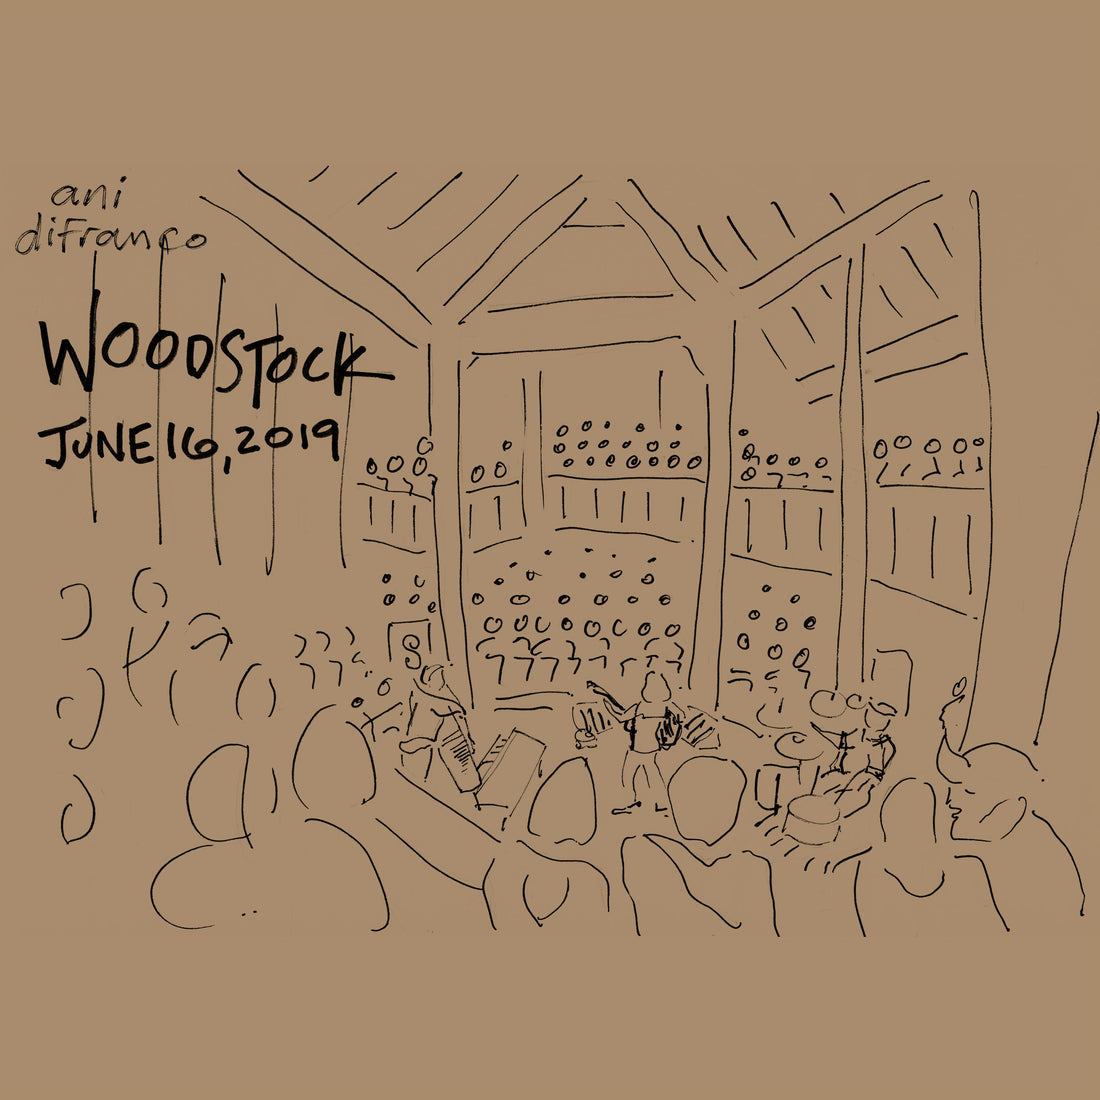 New bootleg: Woodstock 6.16.19